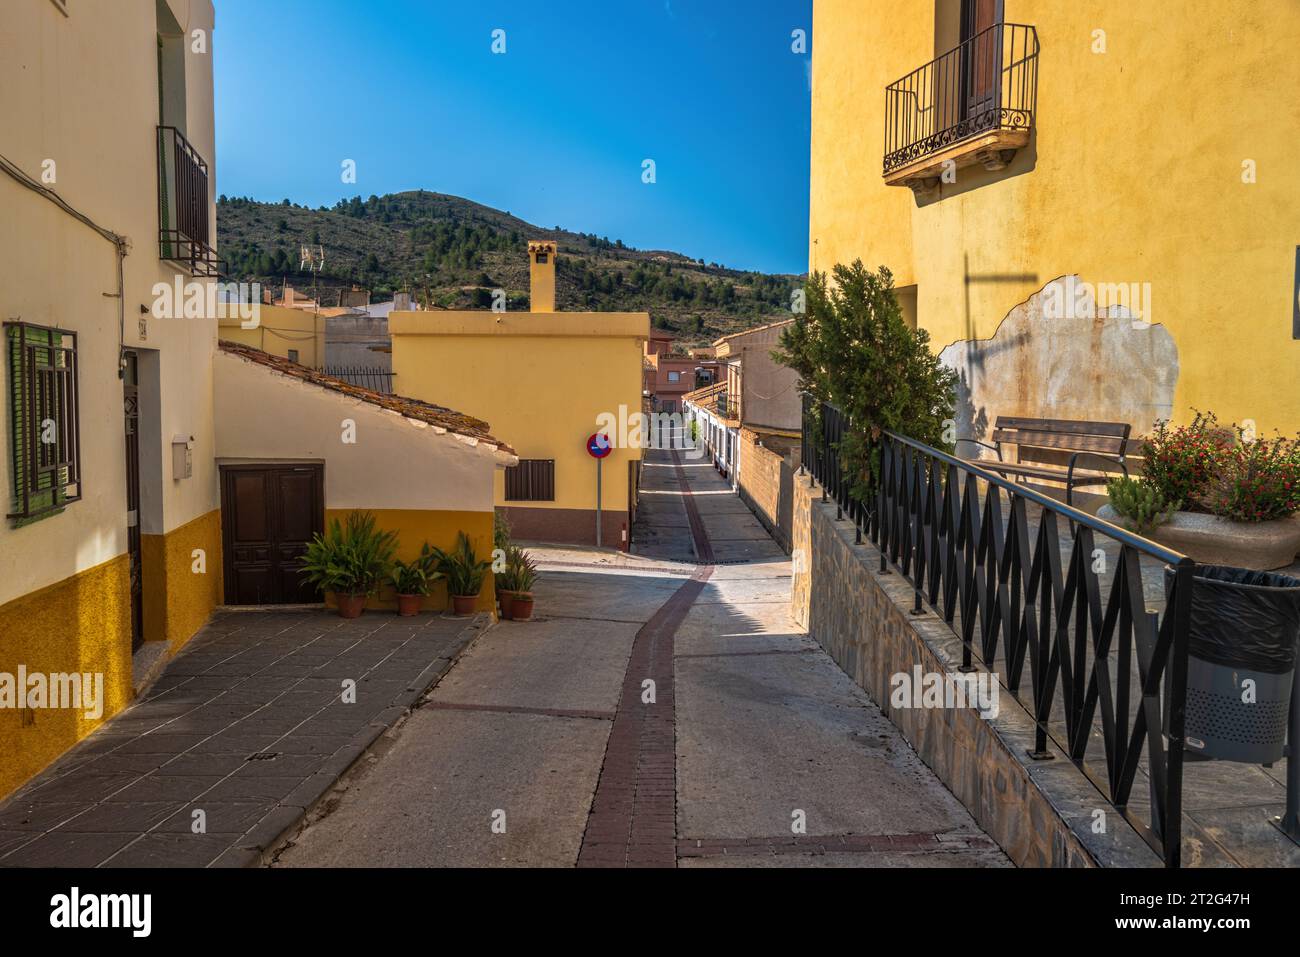 Une photo grand angle d'une rue de village espagnol menant au pied d'une montagne. Banque D'Images